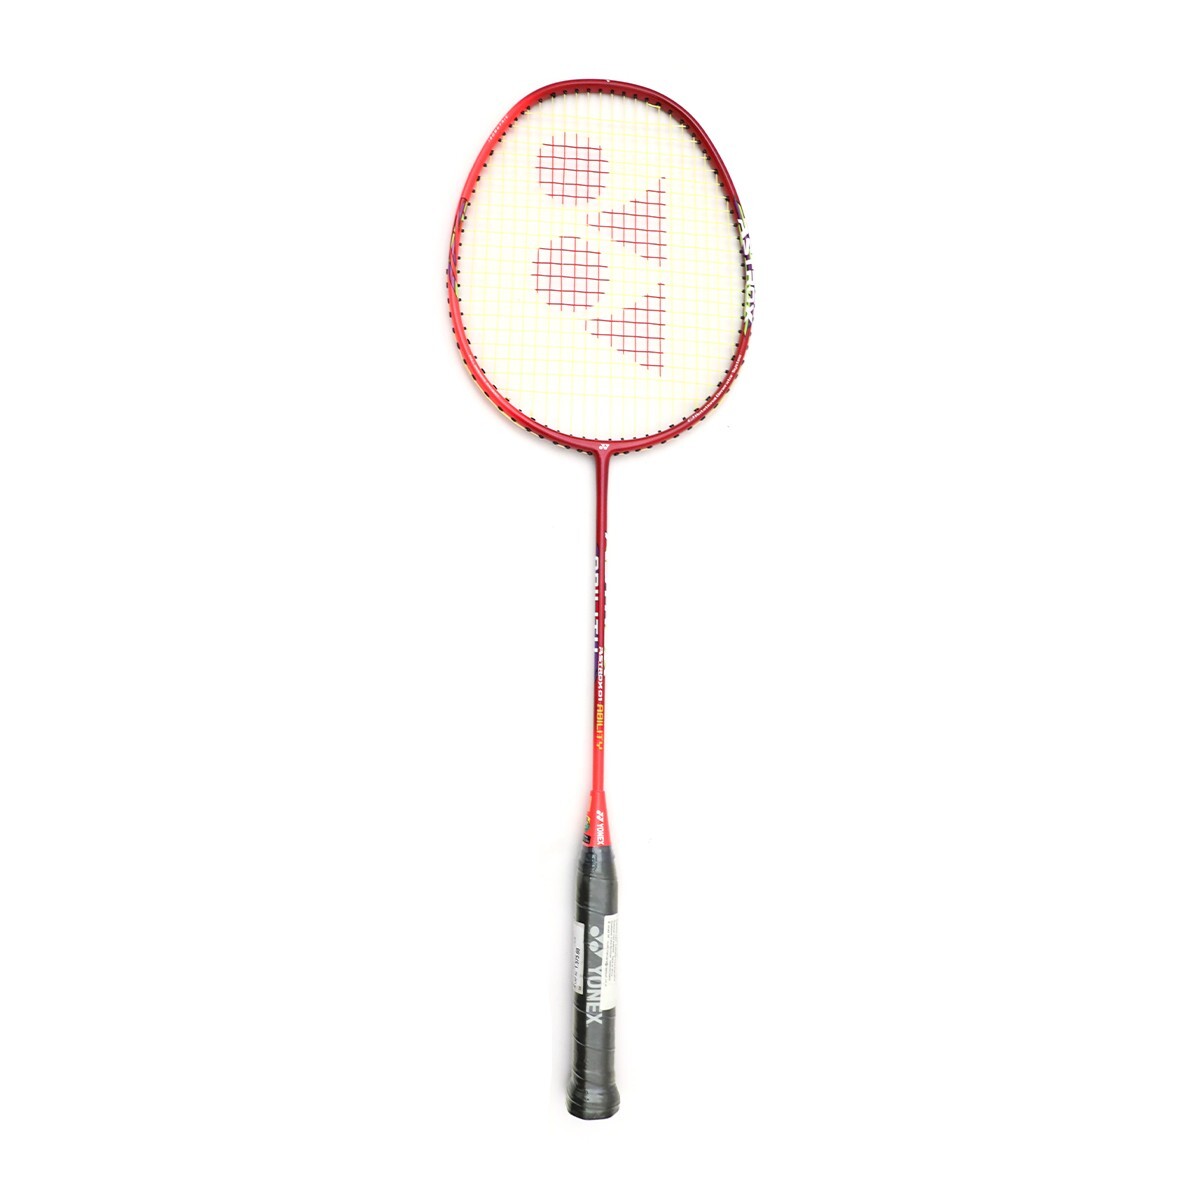 Yonex Badminton Racquet Astrox 01 Ability